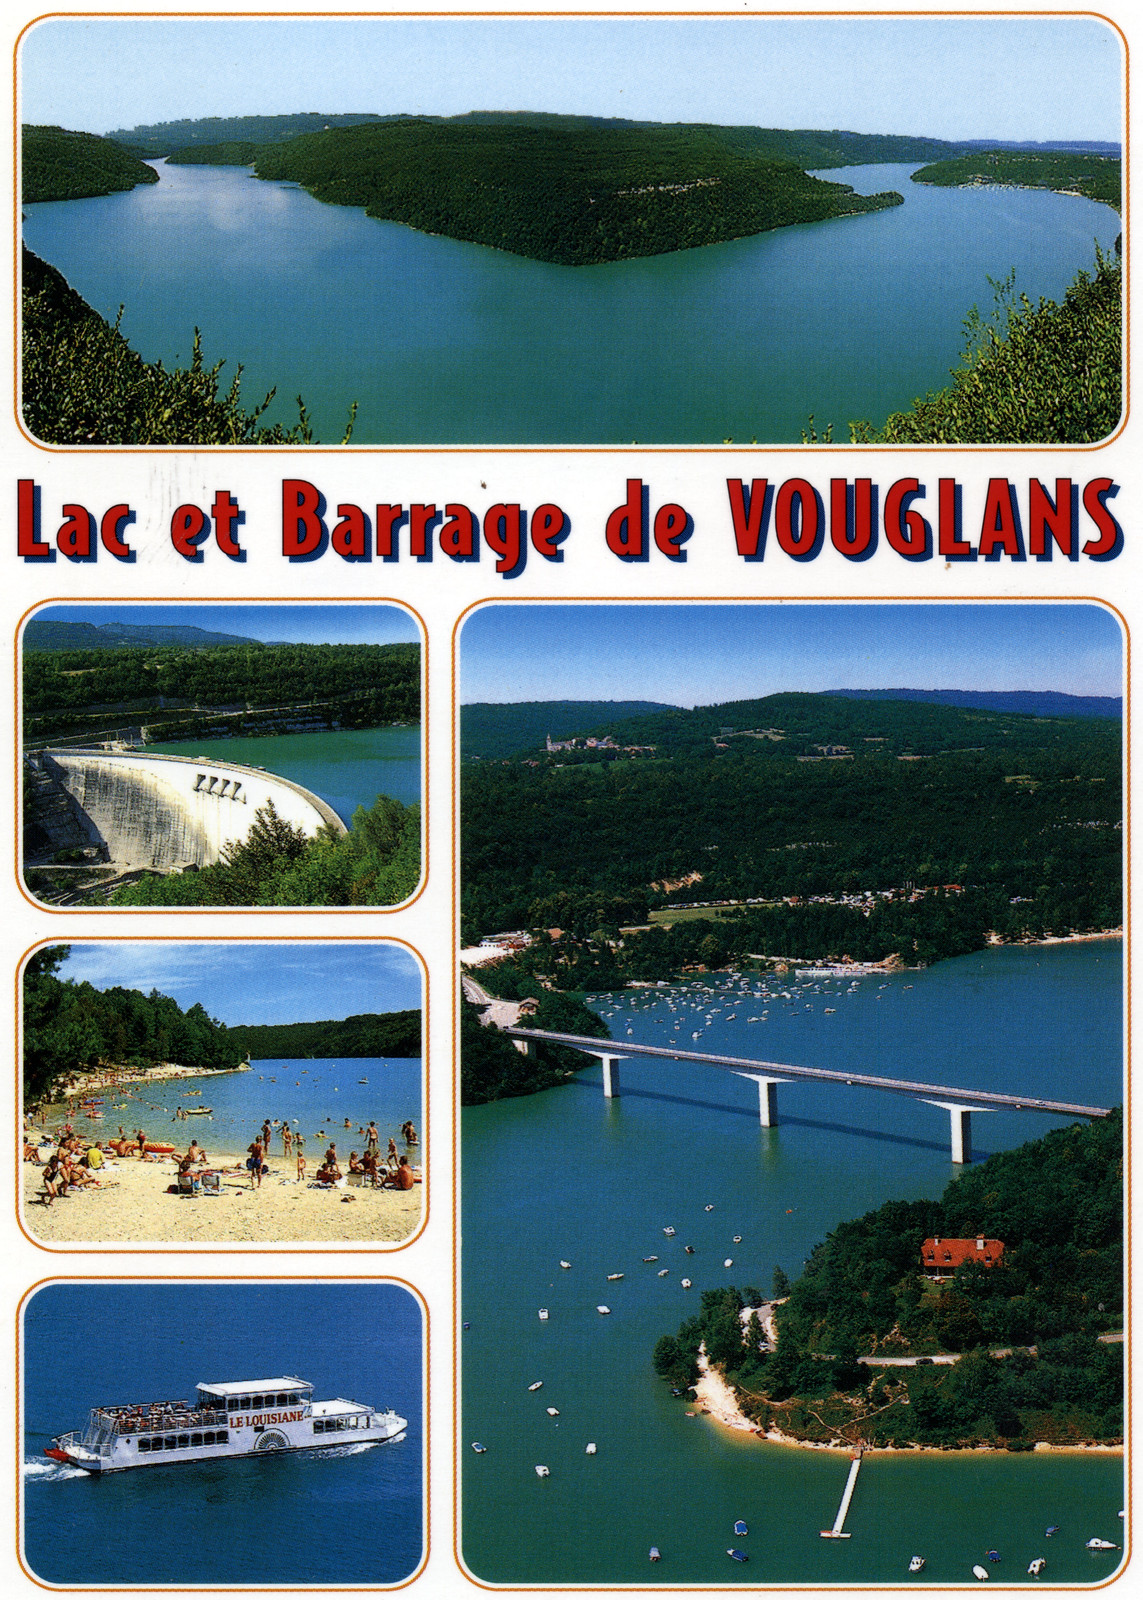 Lac et barrage de Vouglans